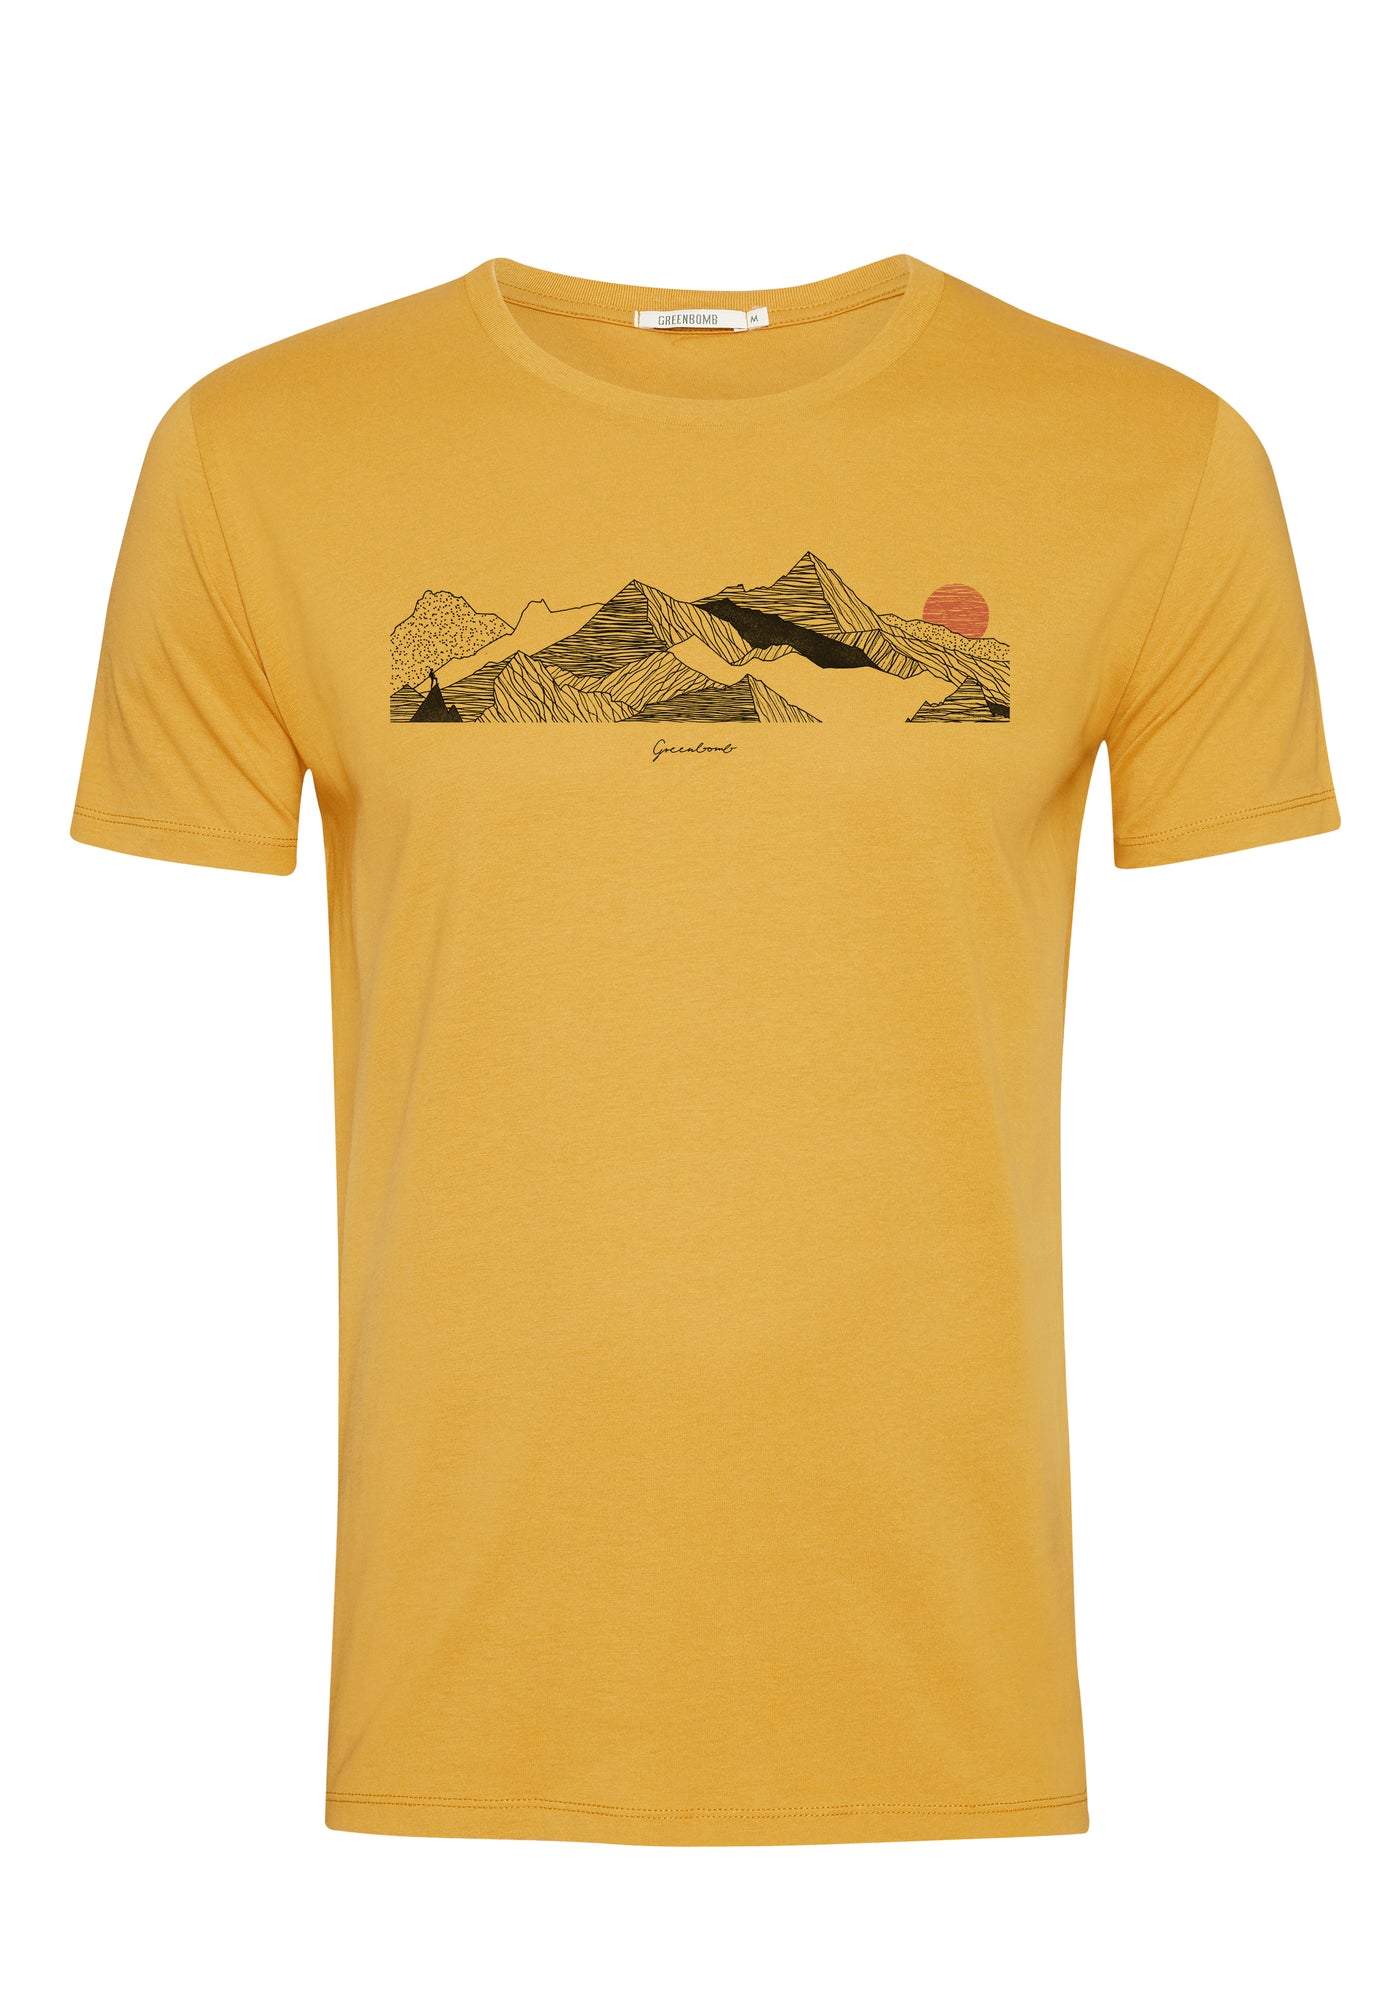 T-Shirt Nature Mountains Sundown Ochre Gelb